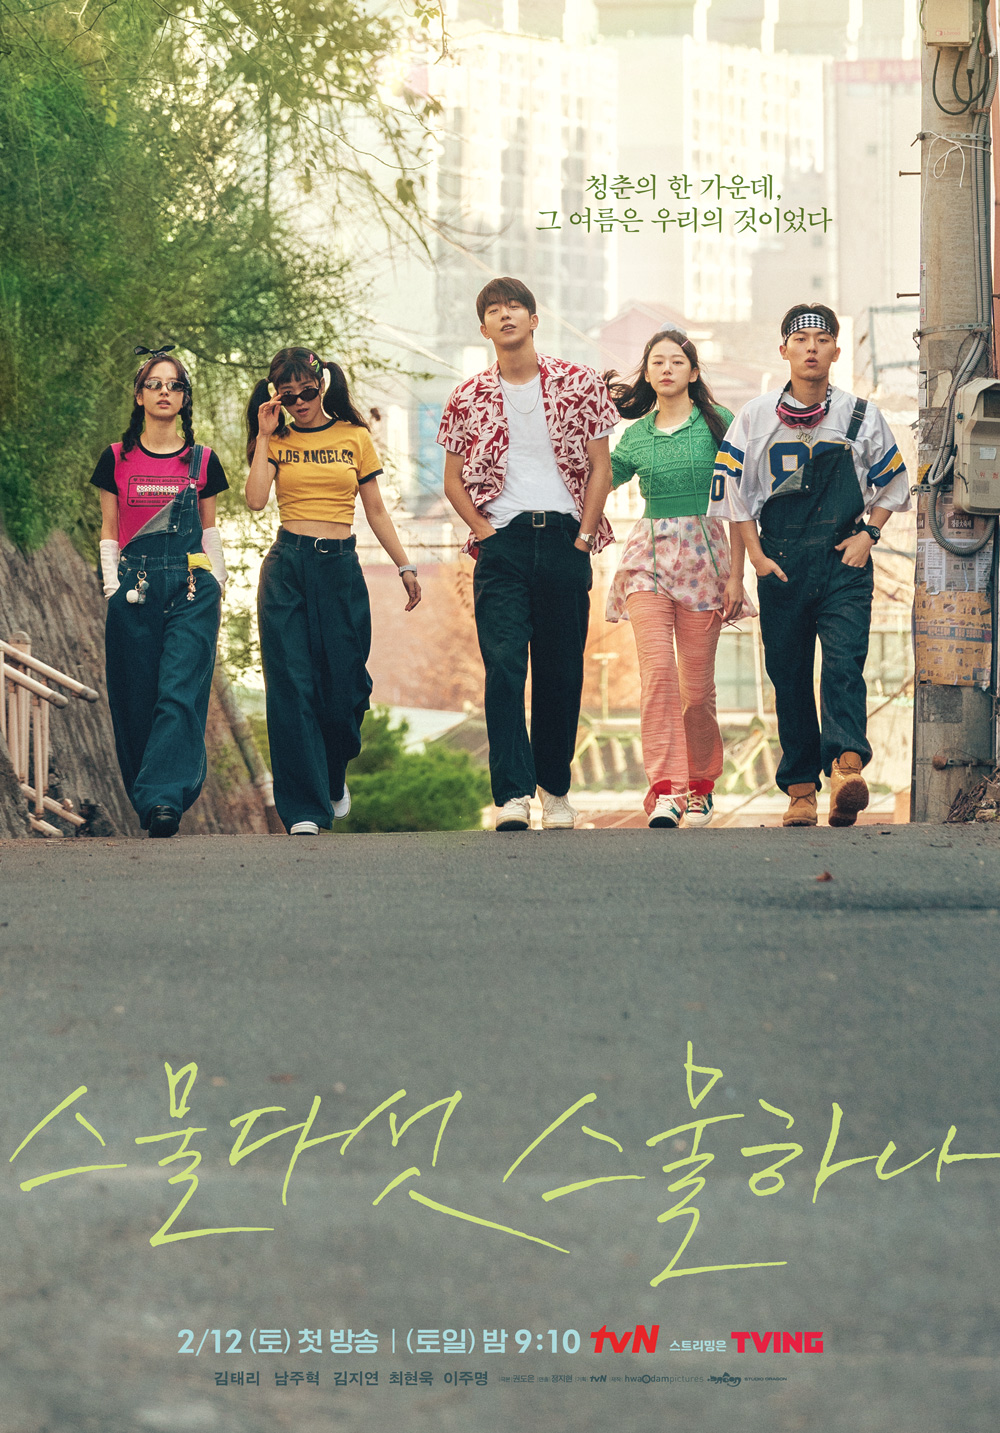 드라마 리뷰(Drama Review): tvN 토일드라마 '스물다섯 스물하나(2521, Twenty-five, Twenty-one)' 